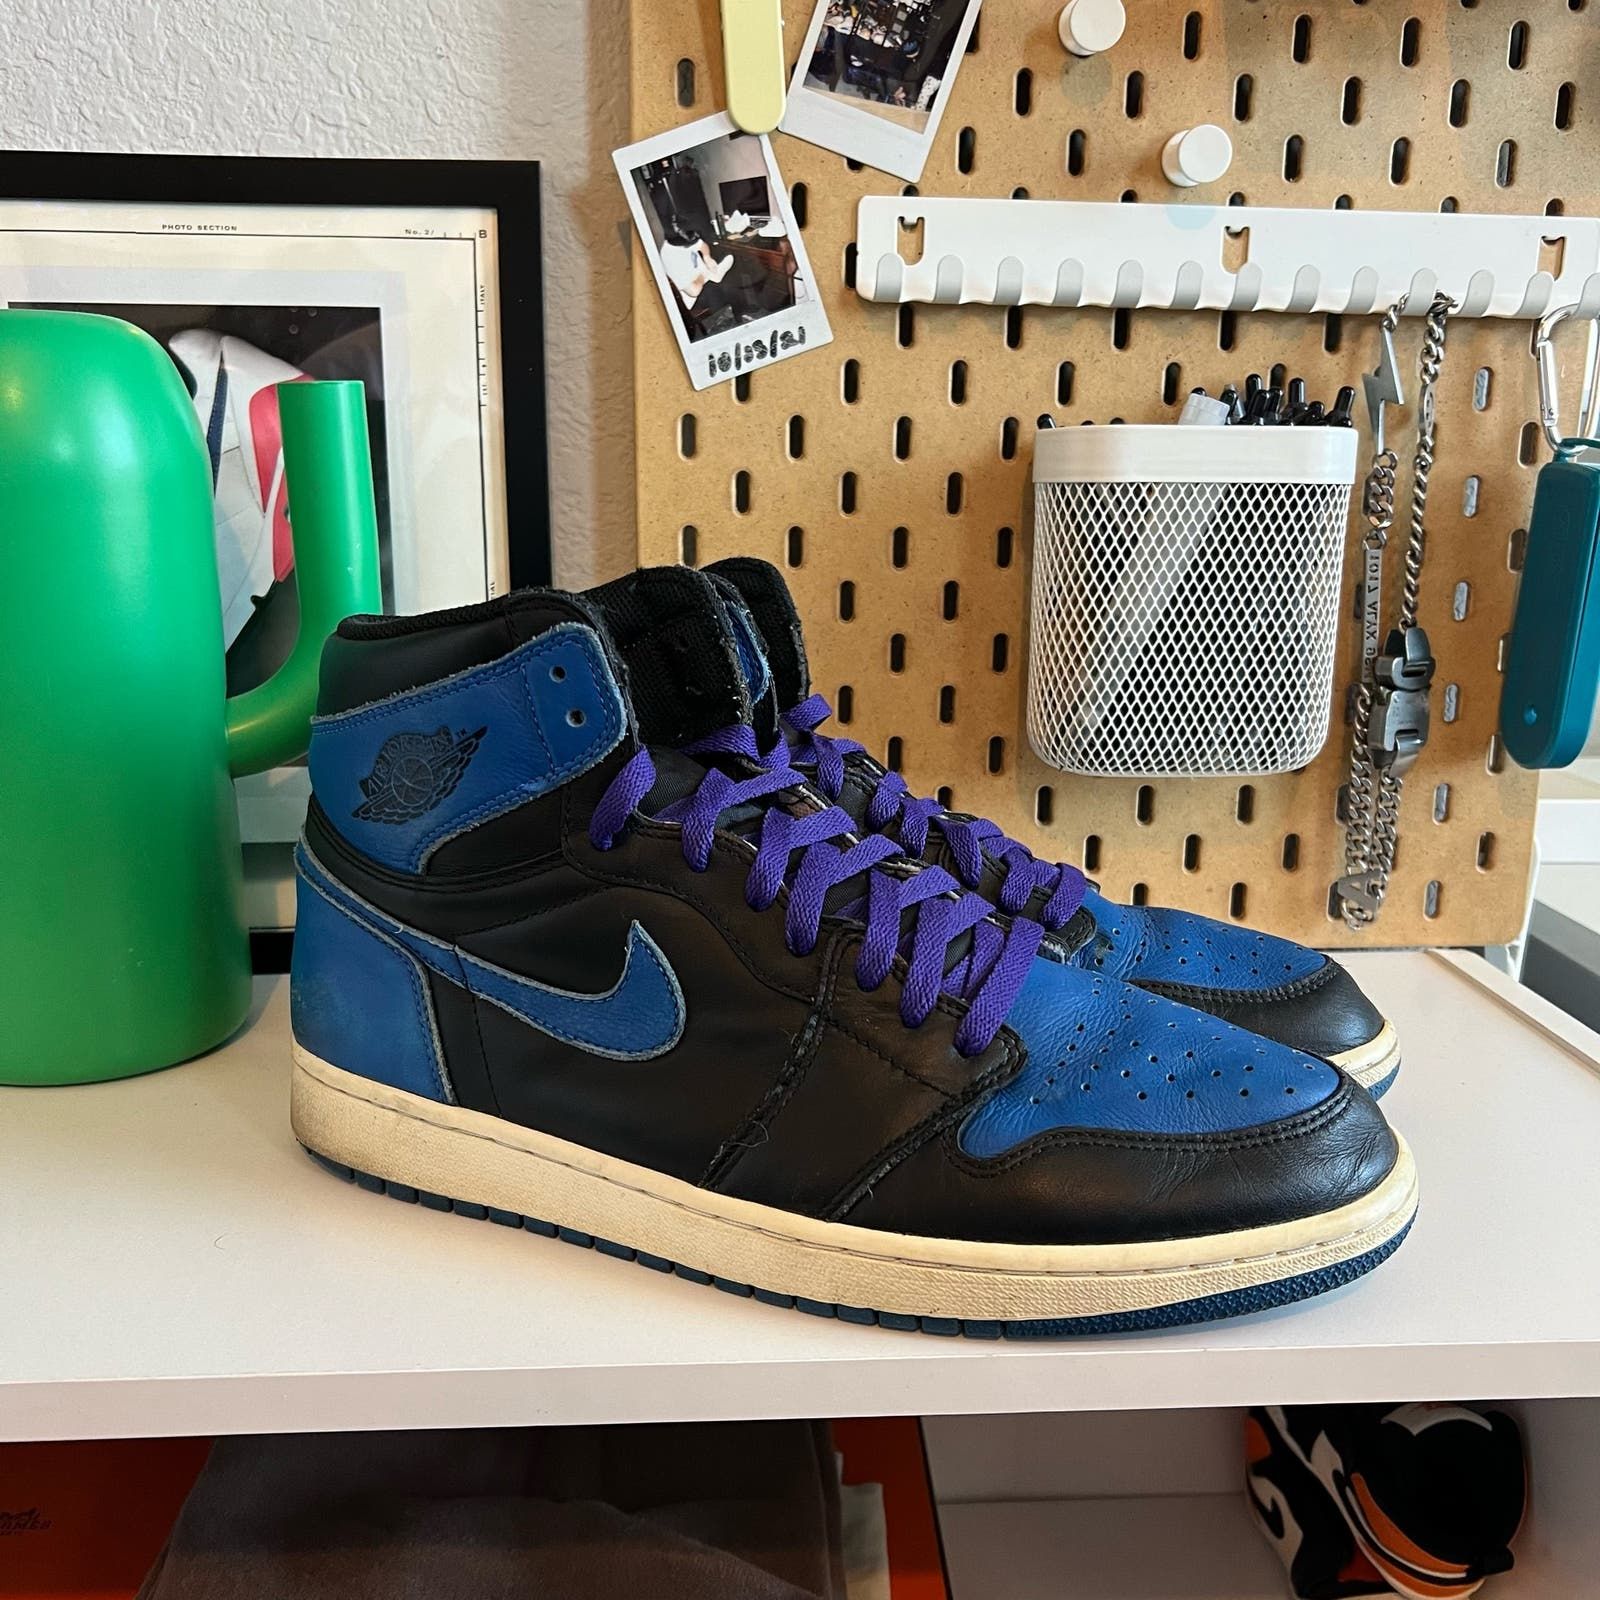 Pre-owned Jordan Brand Size 12 - Nike Air Jordan 1 Royal2018 Shoes In Black